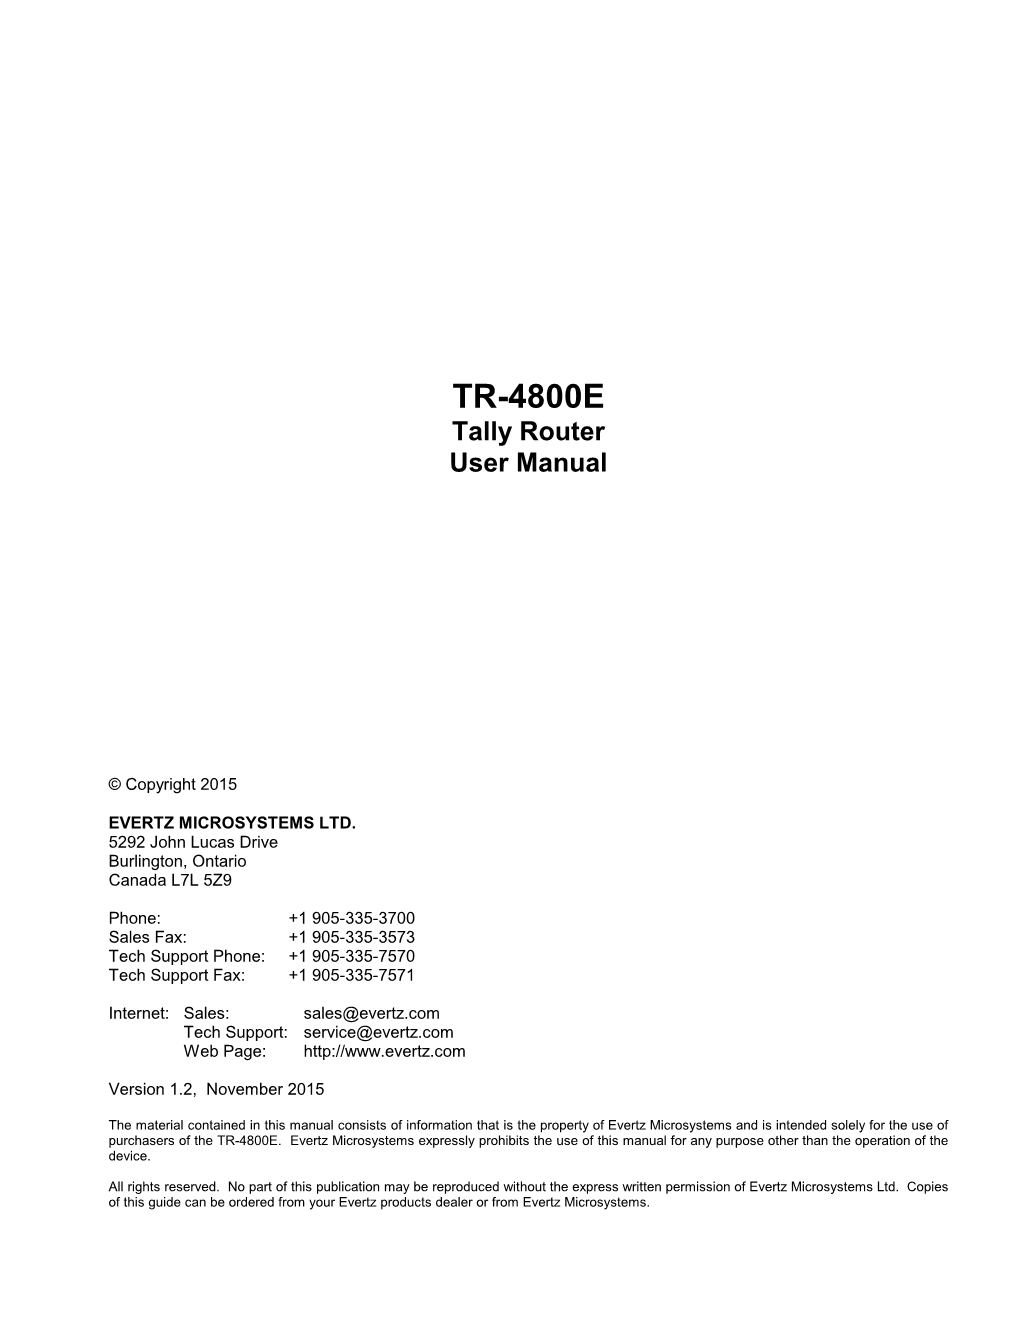 TR-4800E Tally Router User Manual